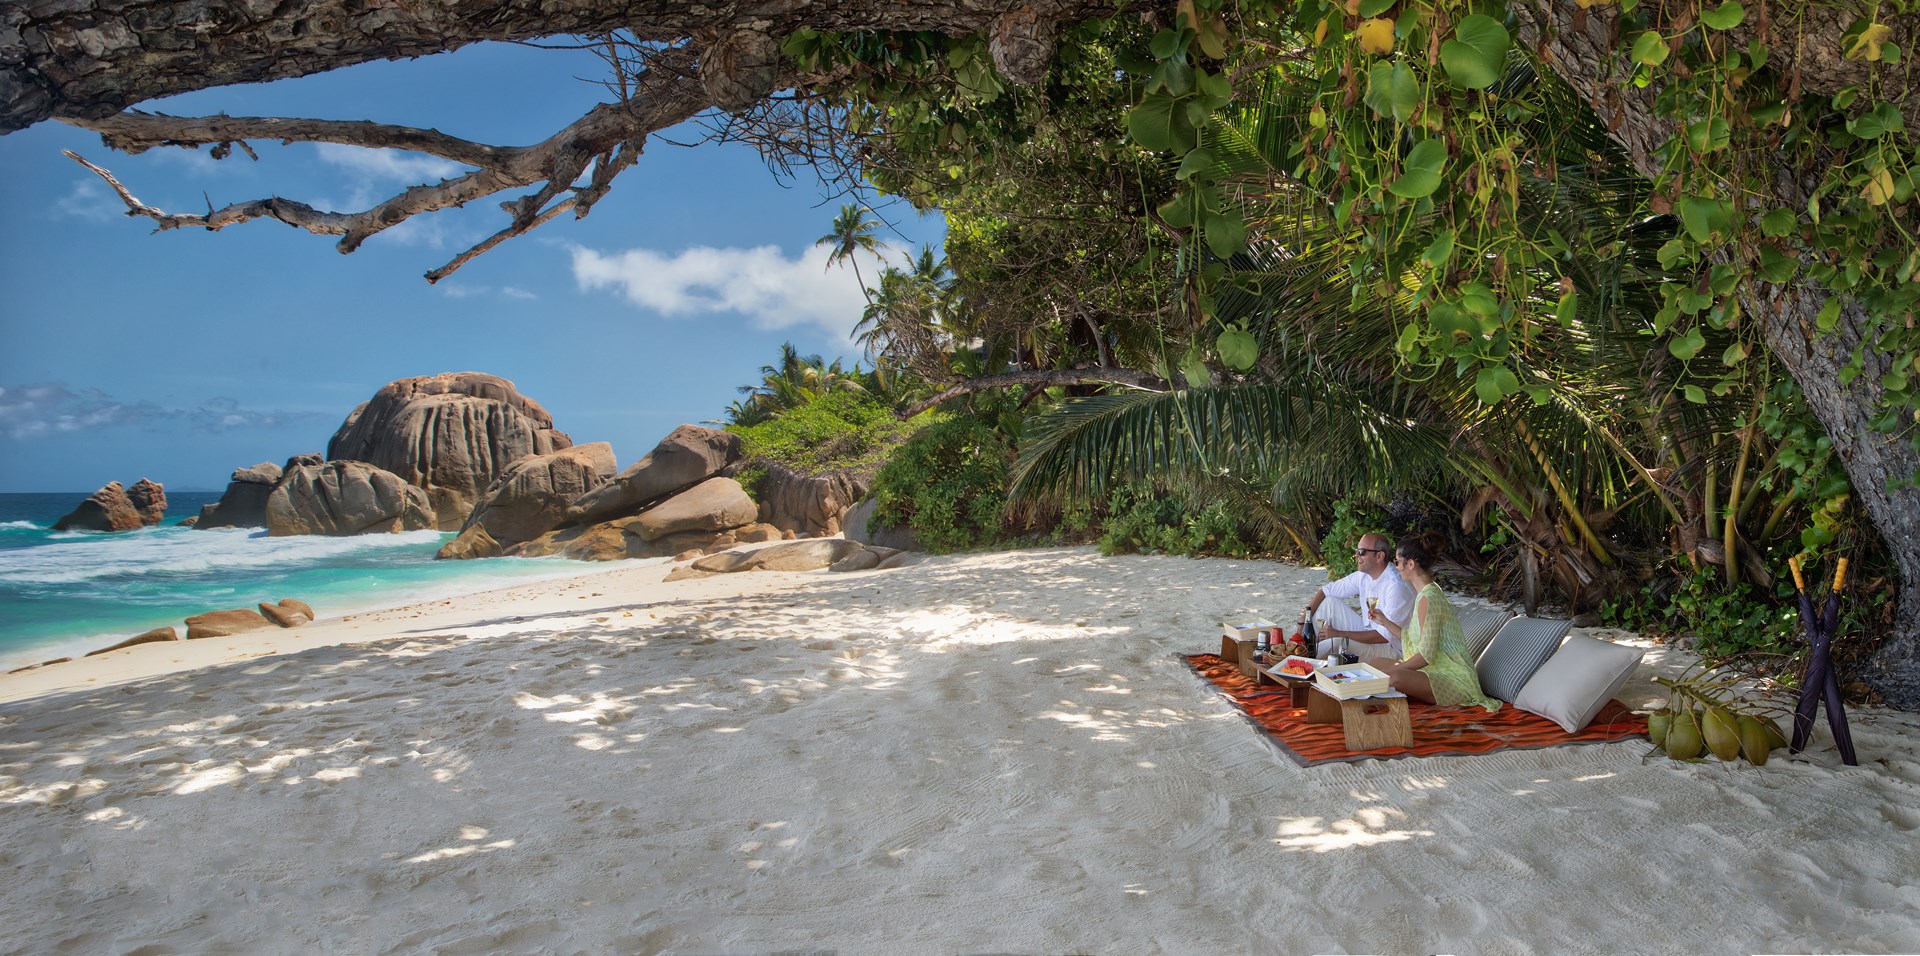 De ultieme luxereis naar de Seychellen! Islandhopping Seychellen, luxury combo